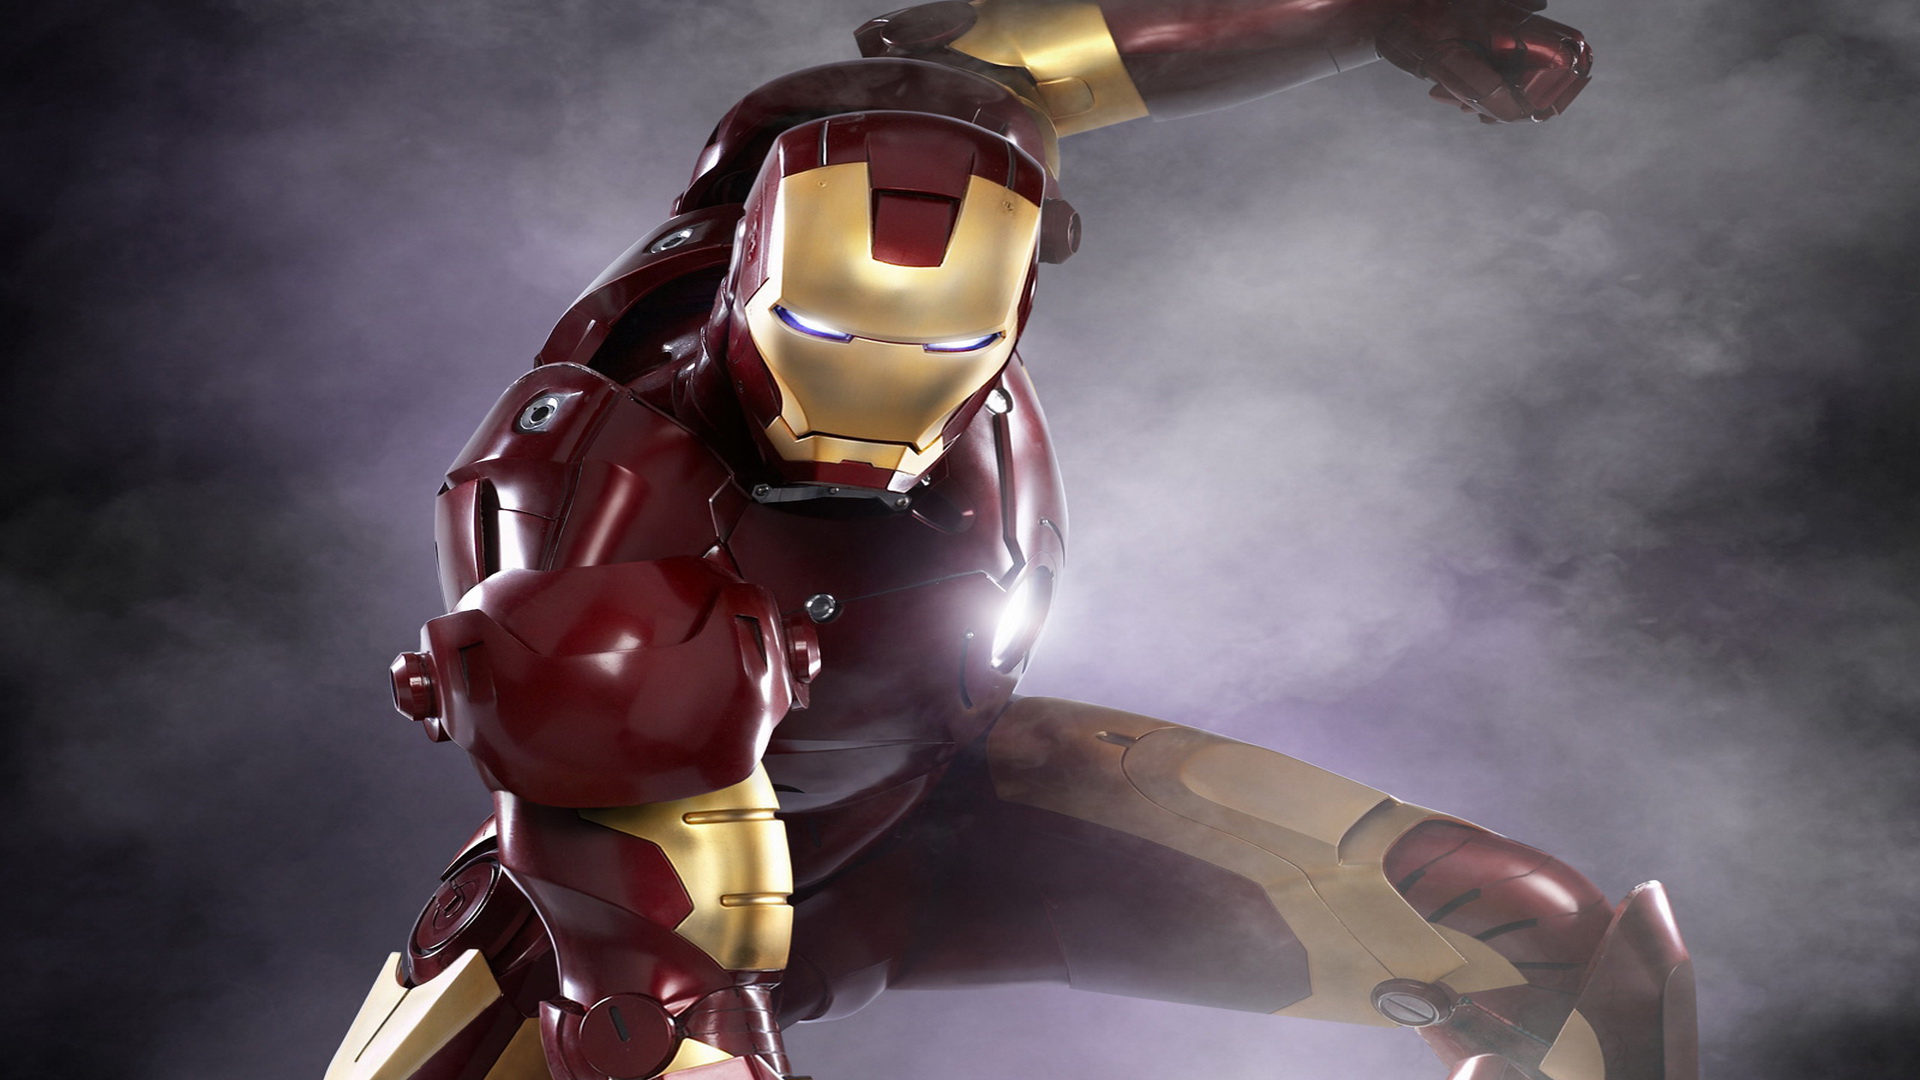 iron man 3d fond d'écran,homme de fer,super héros,personnage fictif,figurine,armure